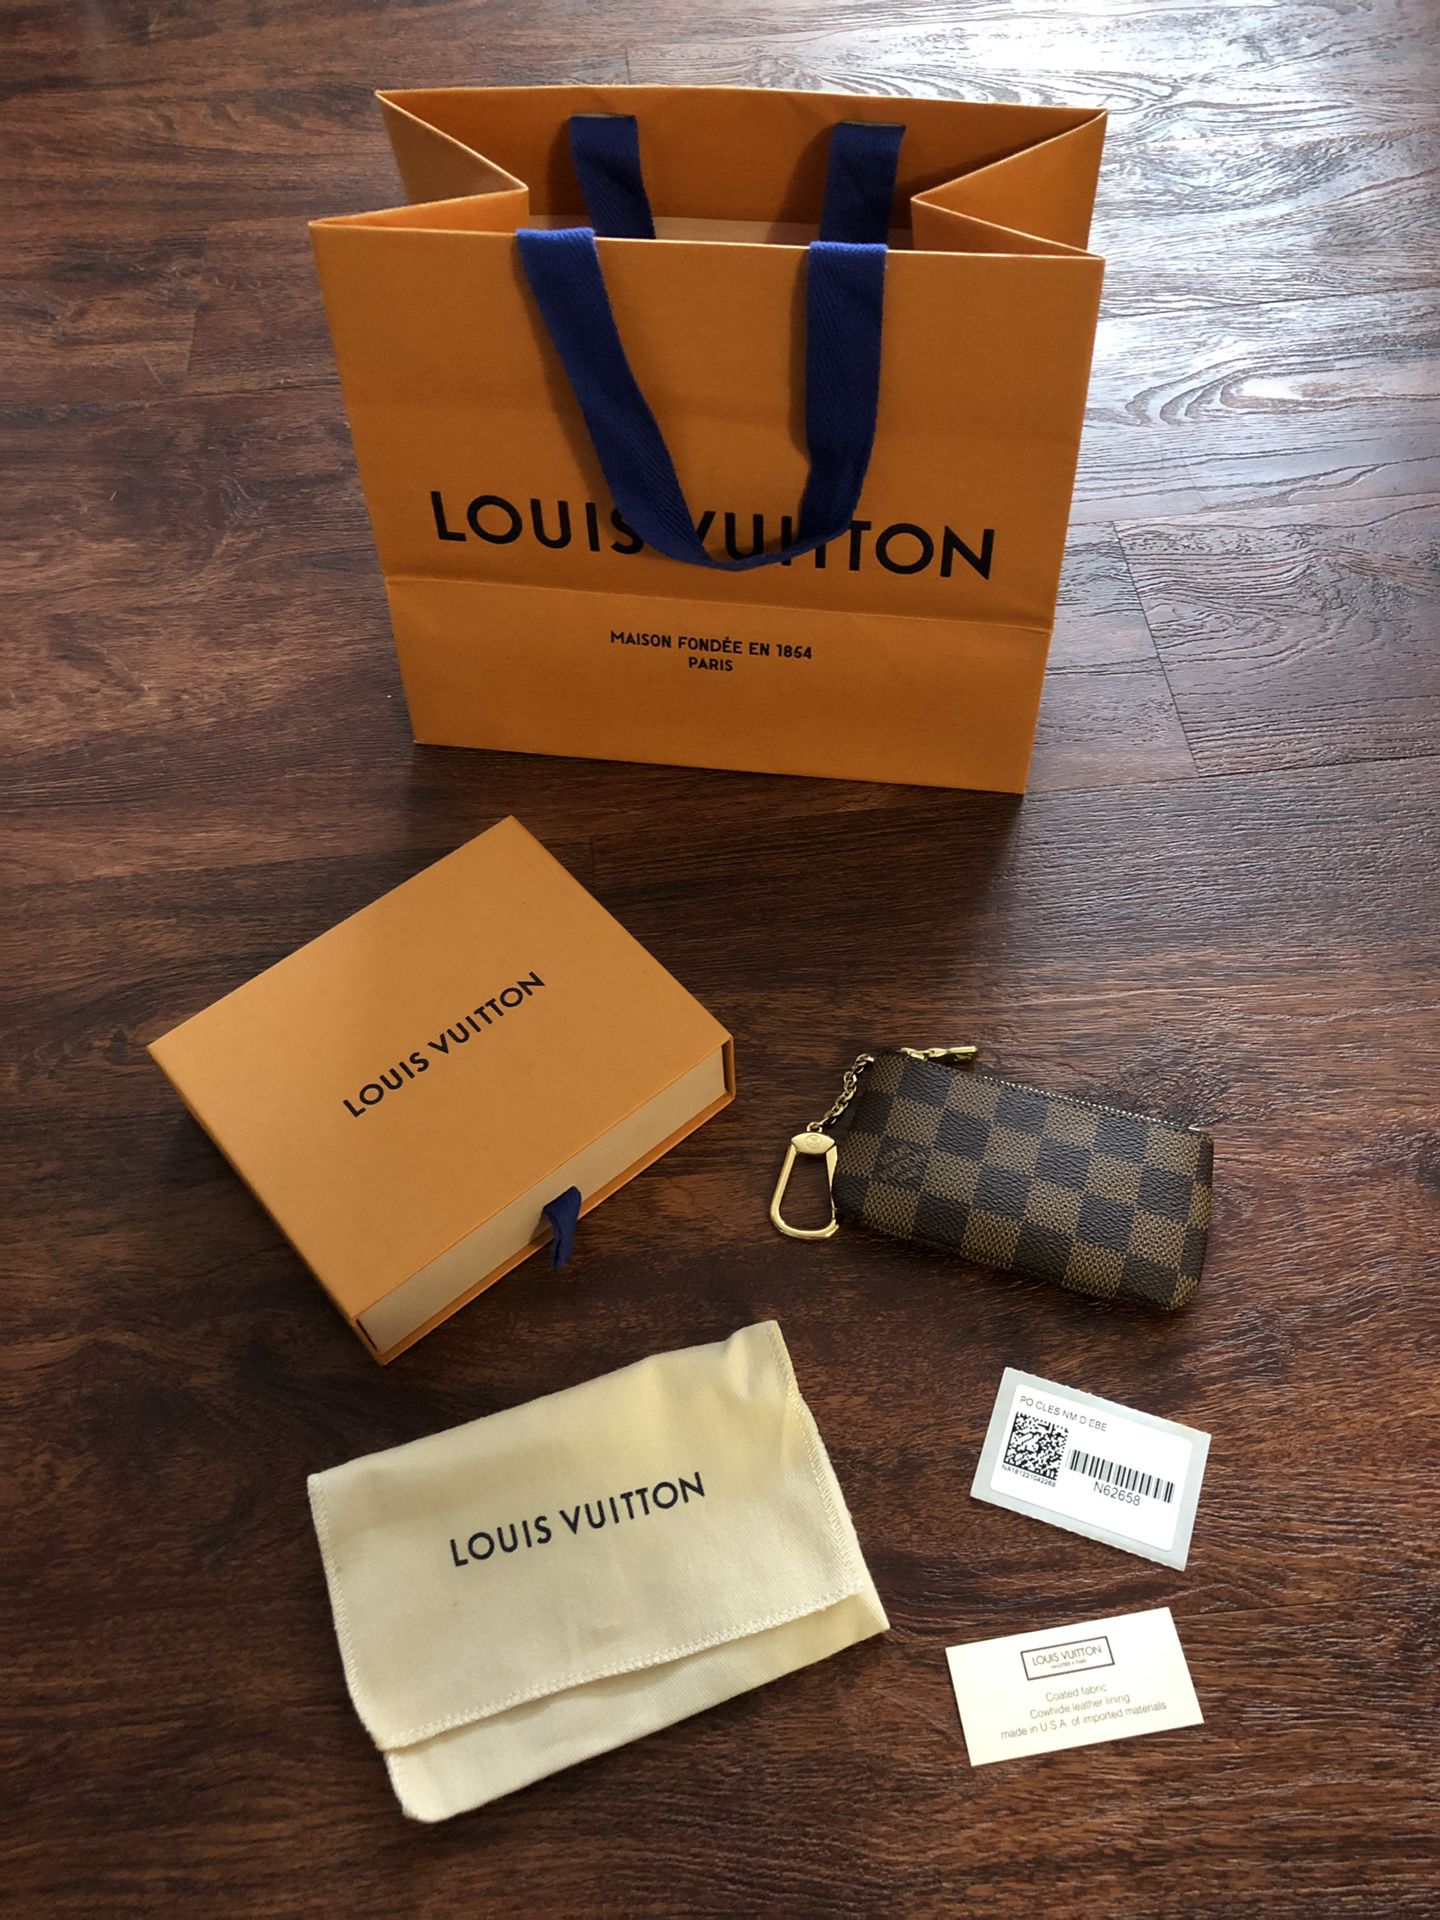 Authentic Louis Vuitton N62658 KEY POUCH